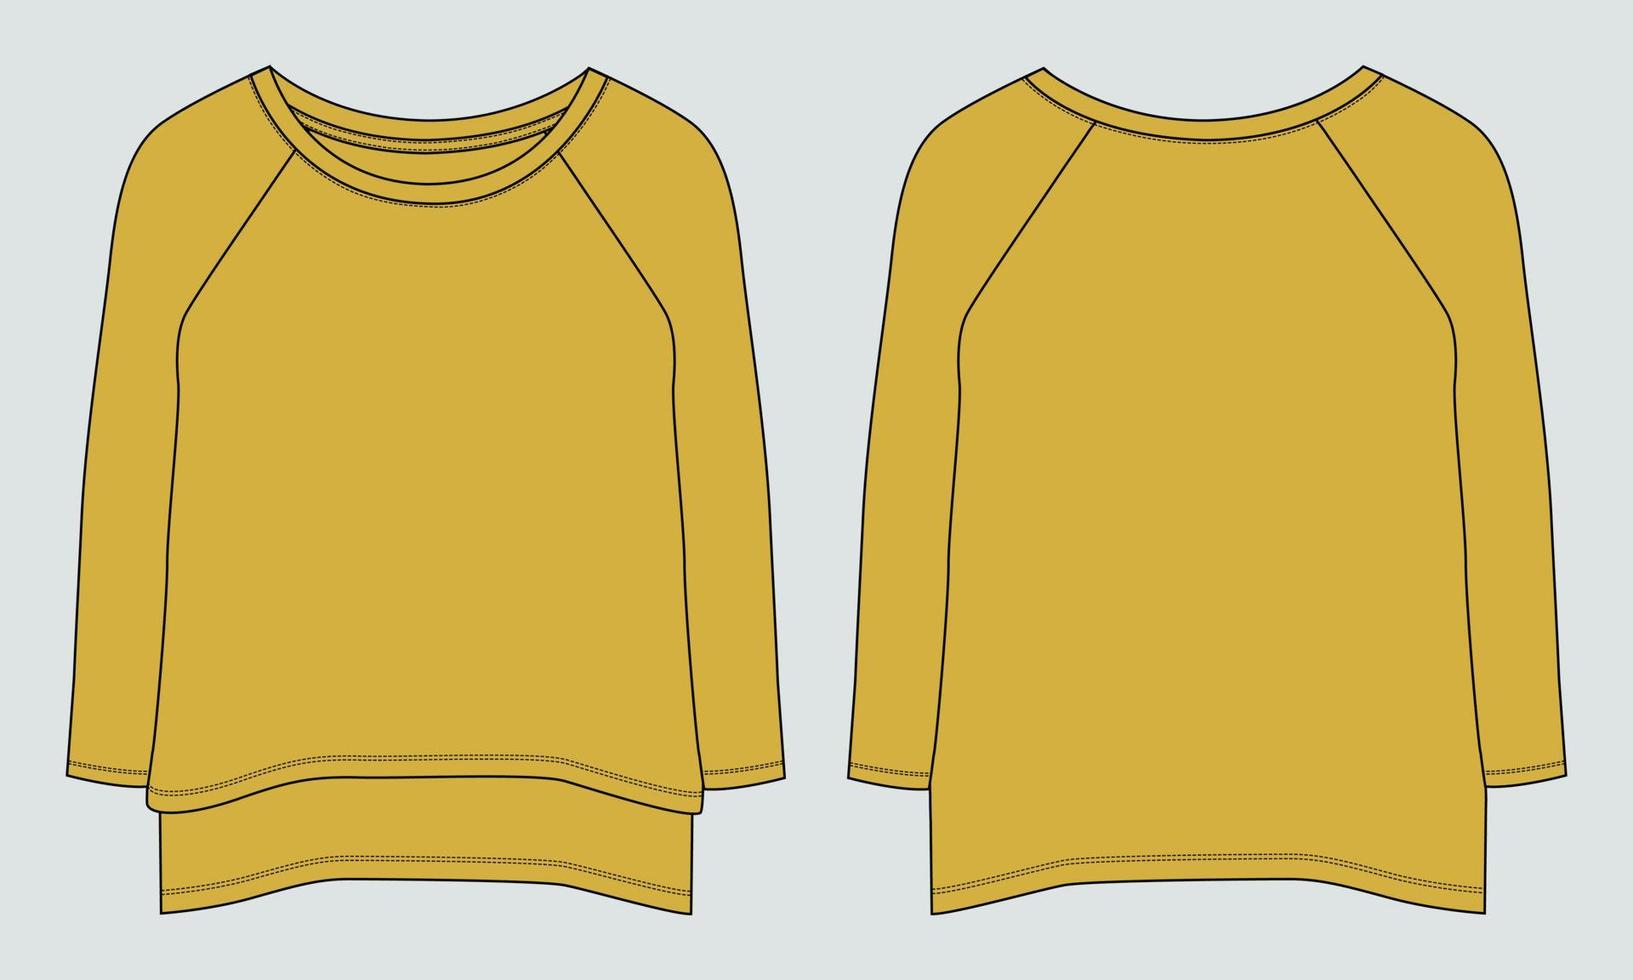 Langarm-T-Shirt Kleid Design technische Mode flache Skizze Vektor-Illustration Vorlage für Babys und Damen. baumwollstoff kleidung mock-up-vorder- und rückansicht. vektor